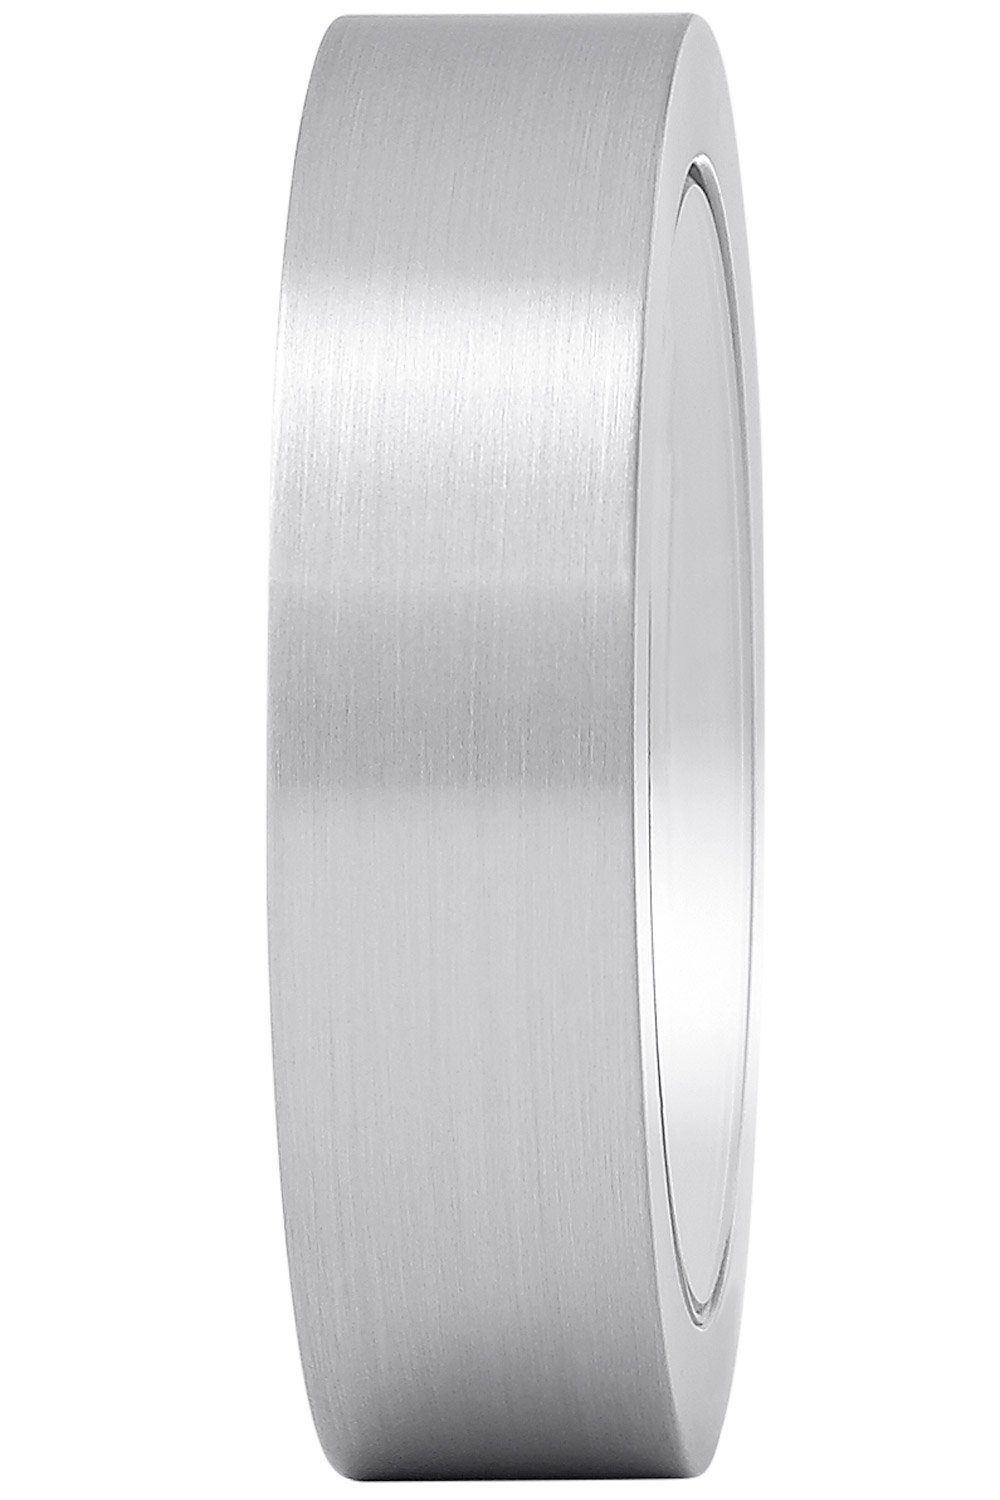 Magnet- MONDAINE Silberfarben Tischuhr